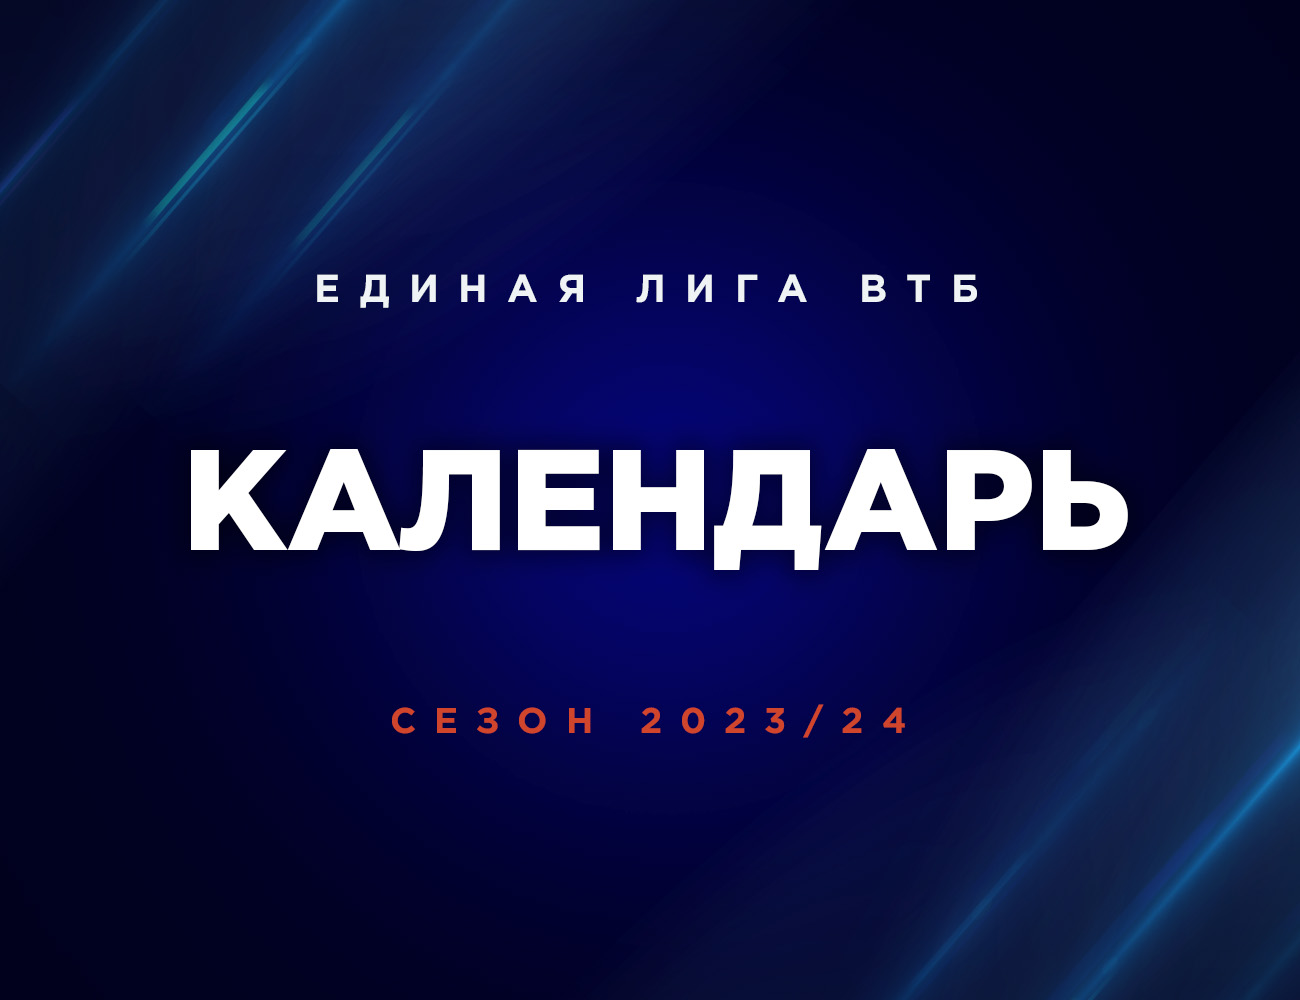 Утвержден календарь чемпионата 2023/24 | Единая Лига ВТБ | VTB United  League - Официальный сайт